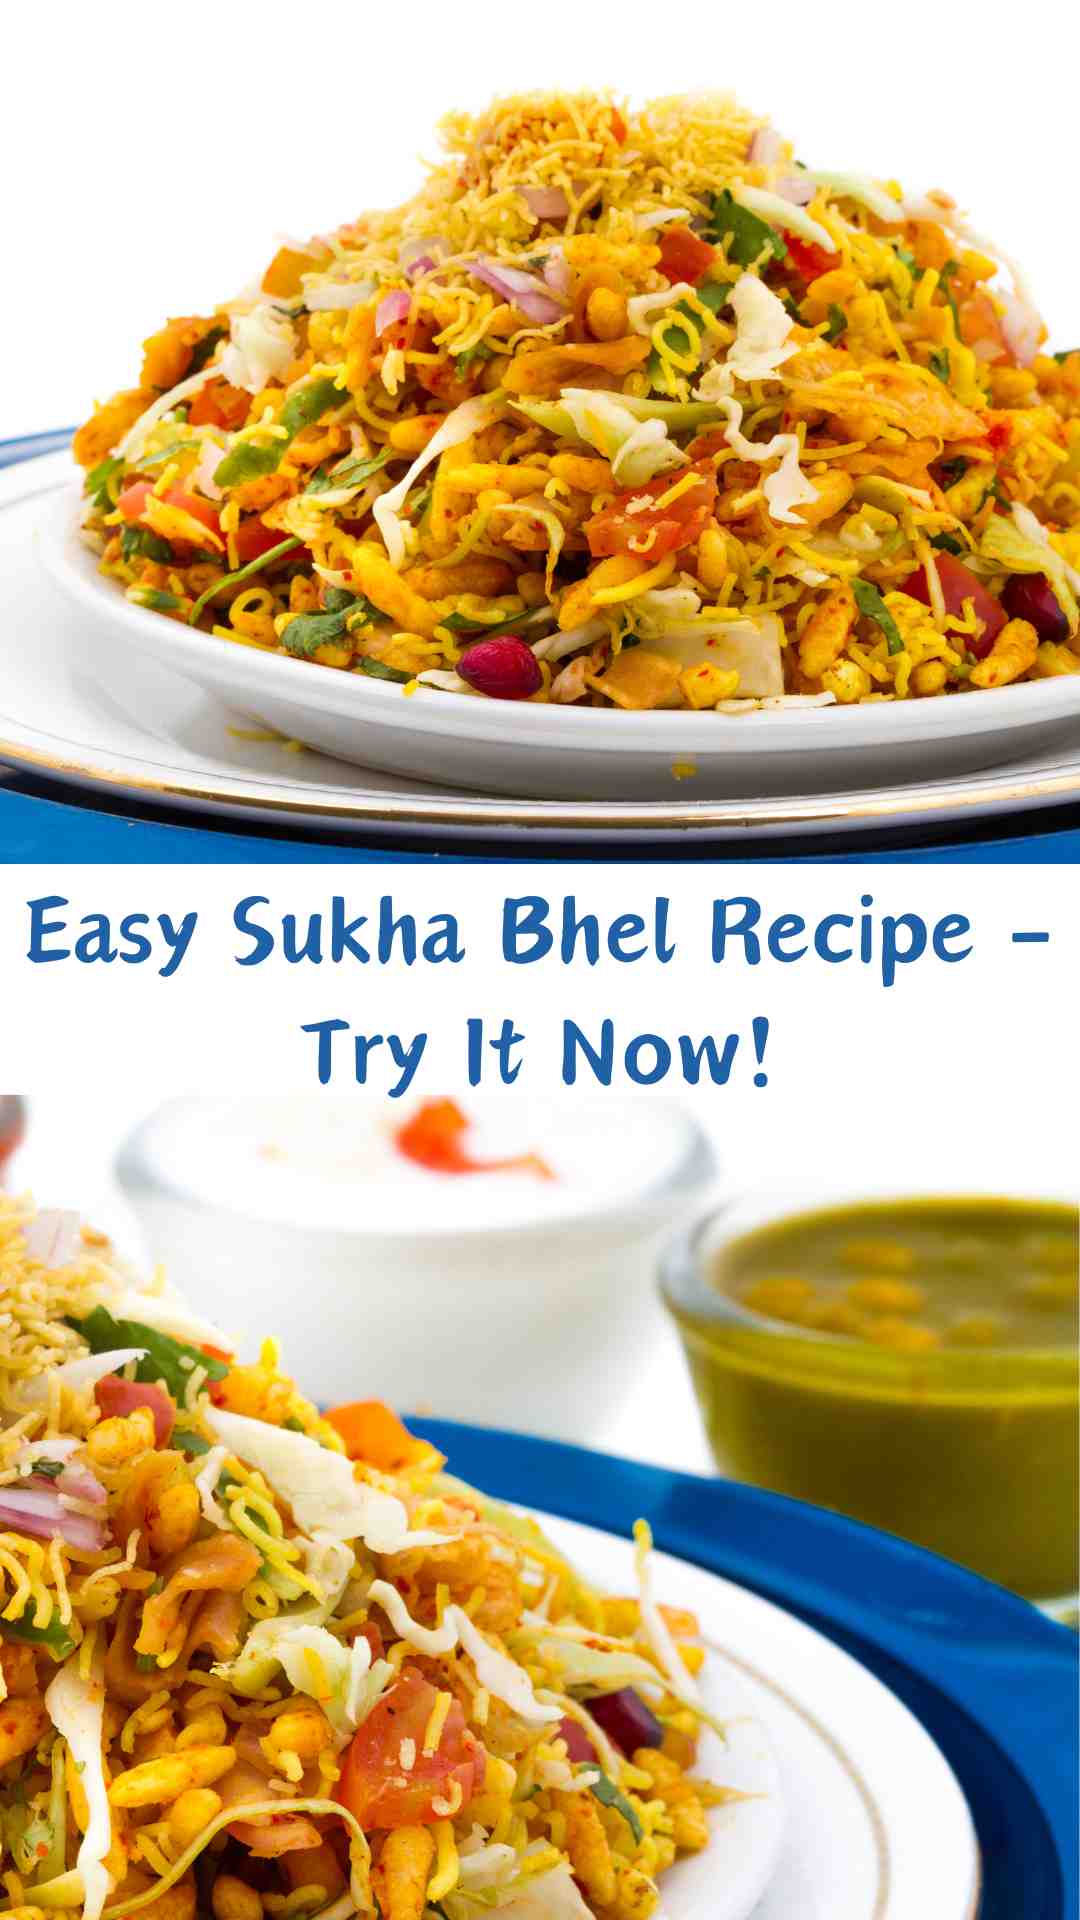 Sukha Bhel Recipe